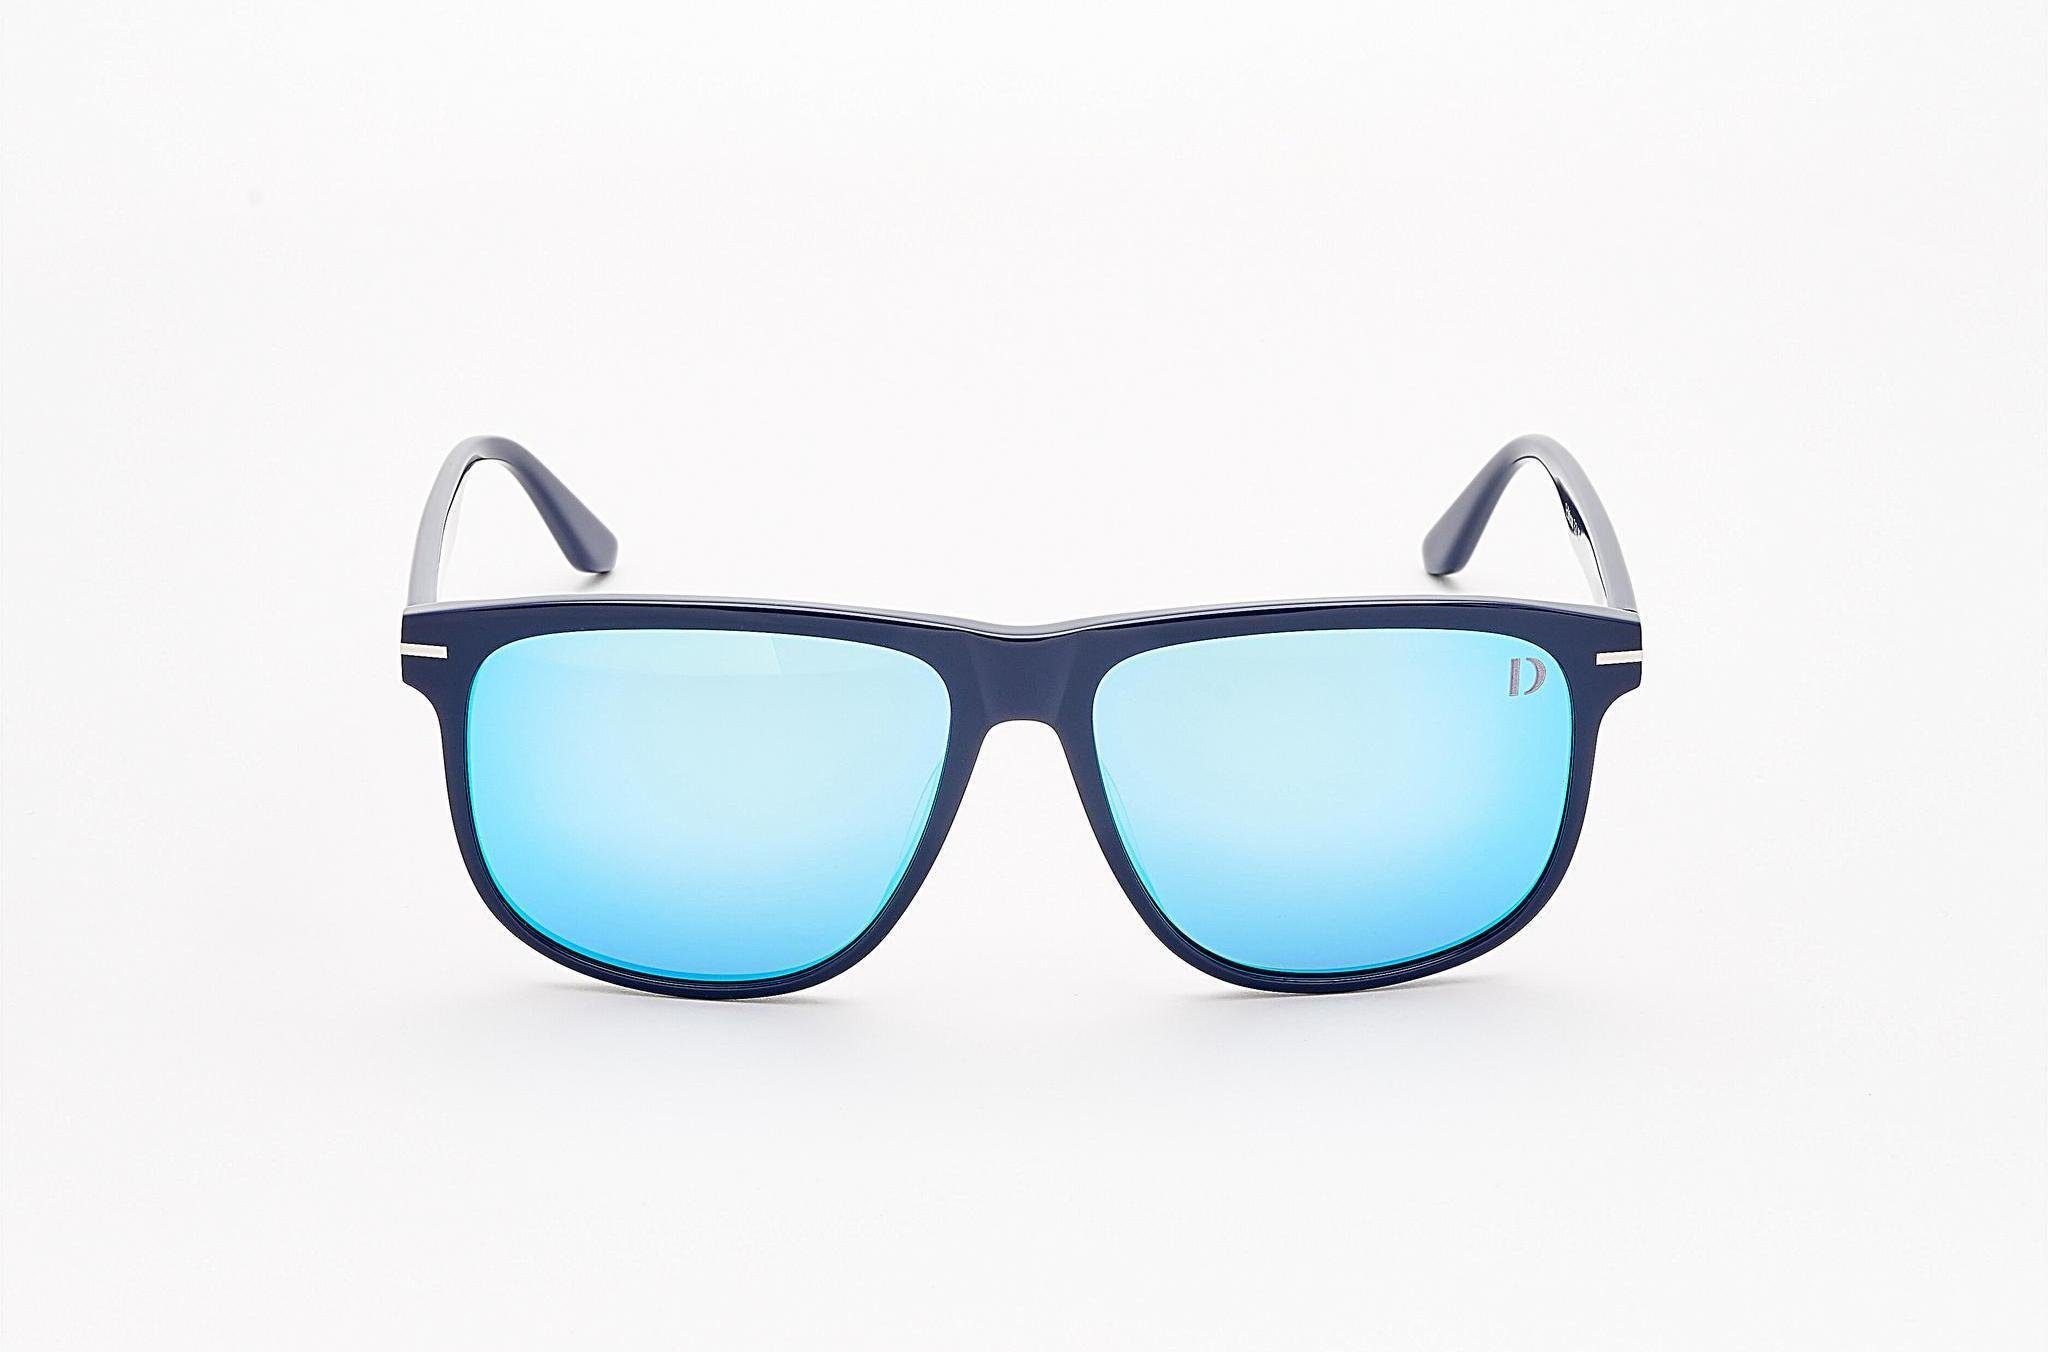 Dieter Bohlen Sonnenbrille EDITION blau 3